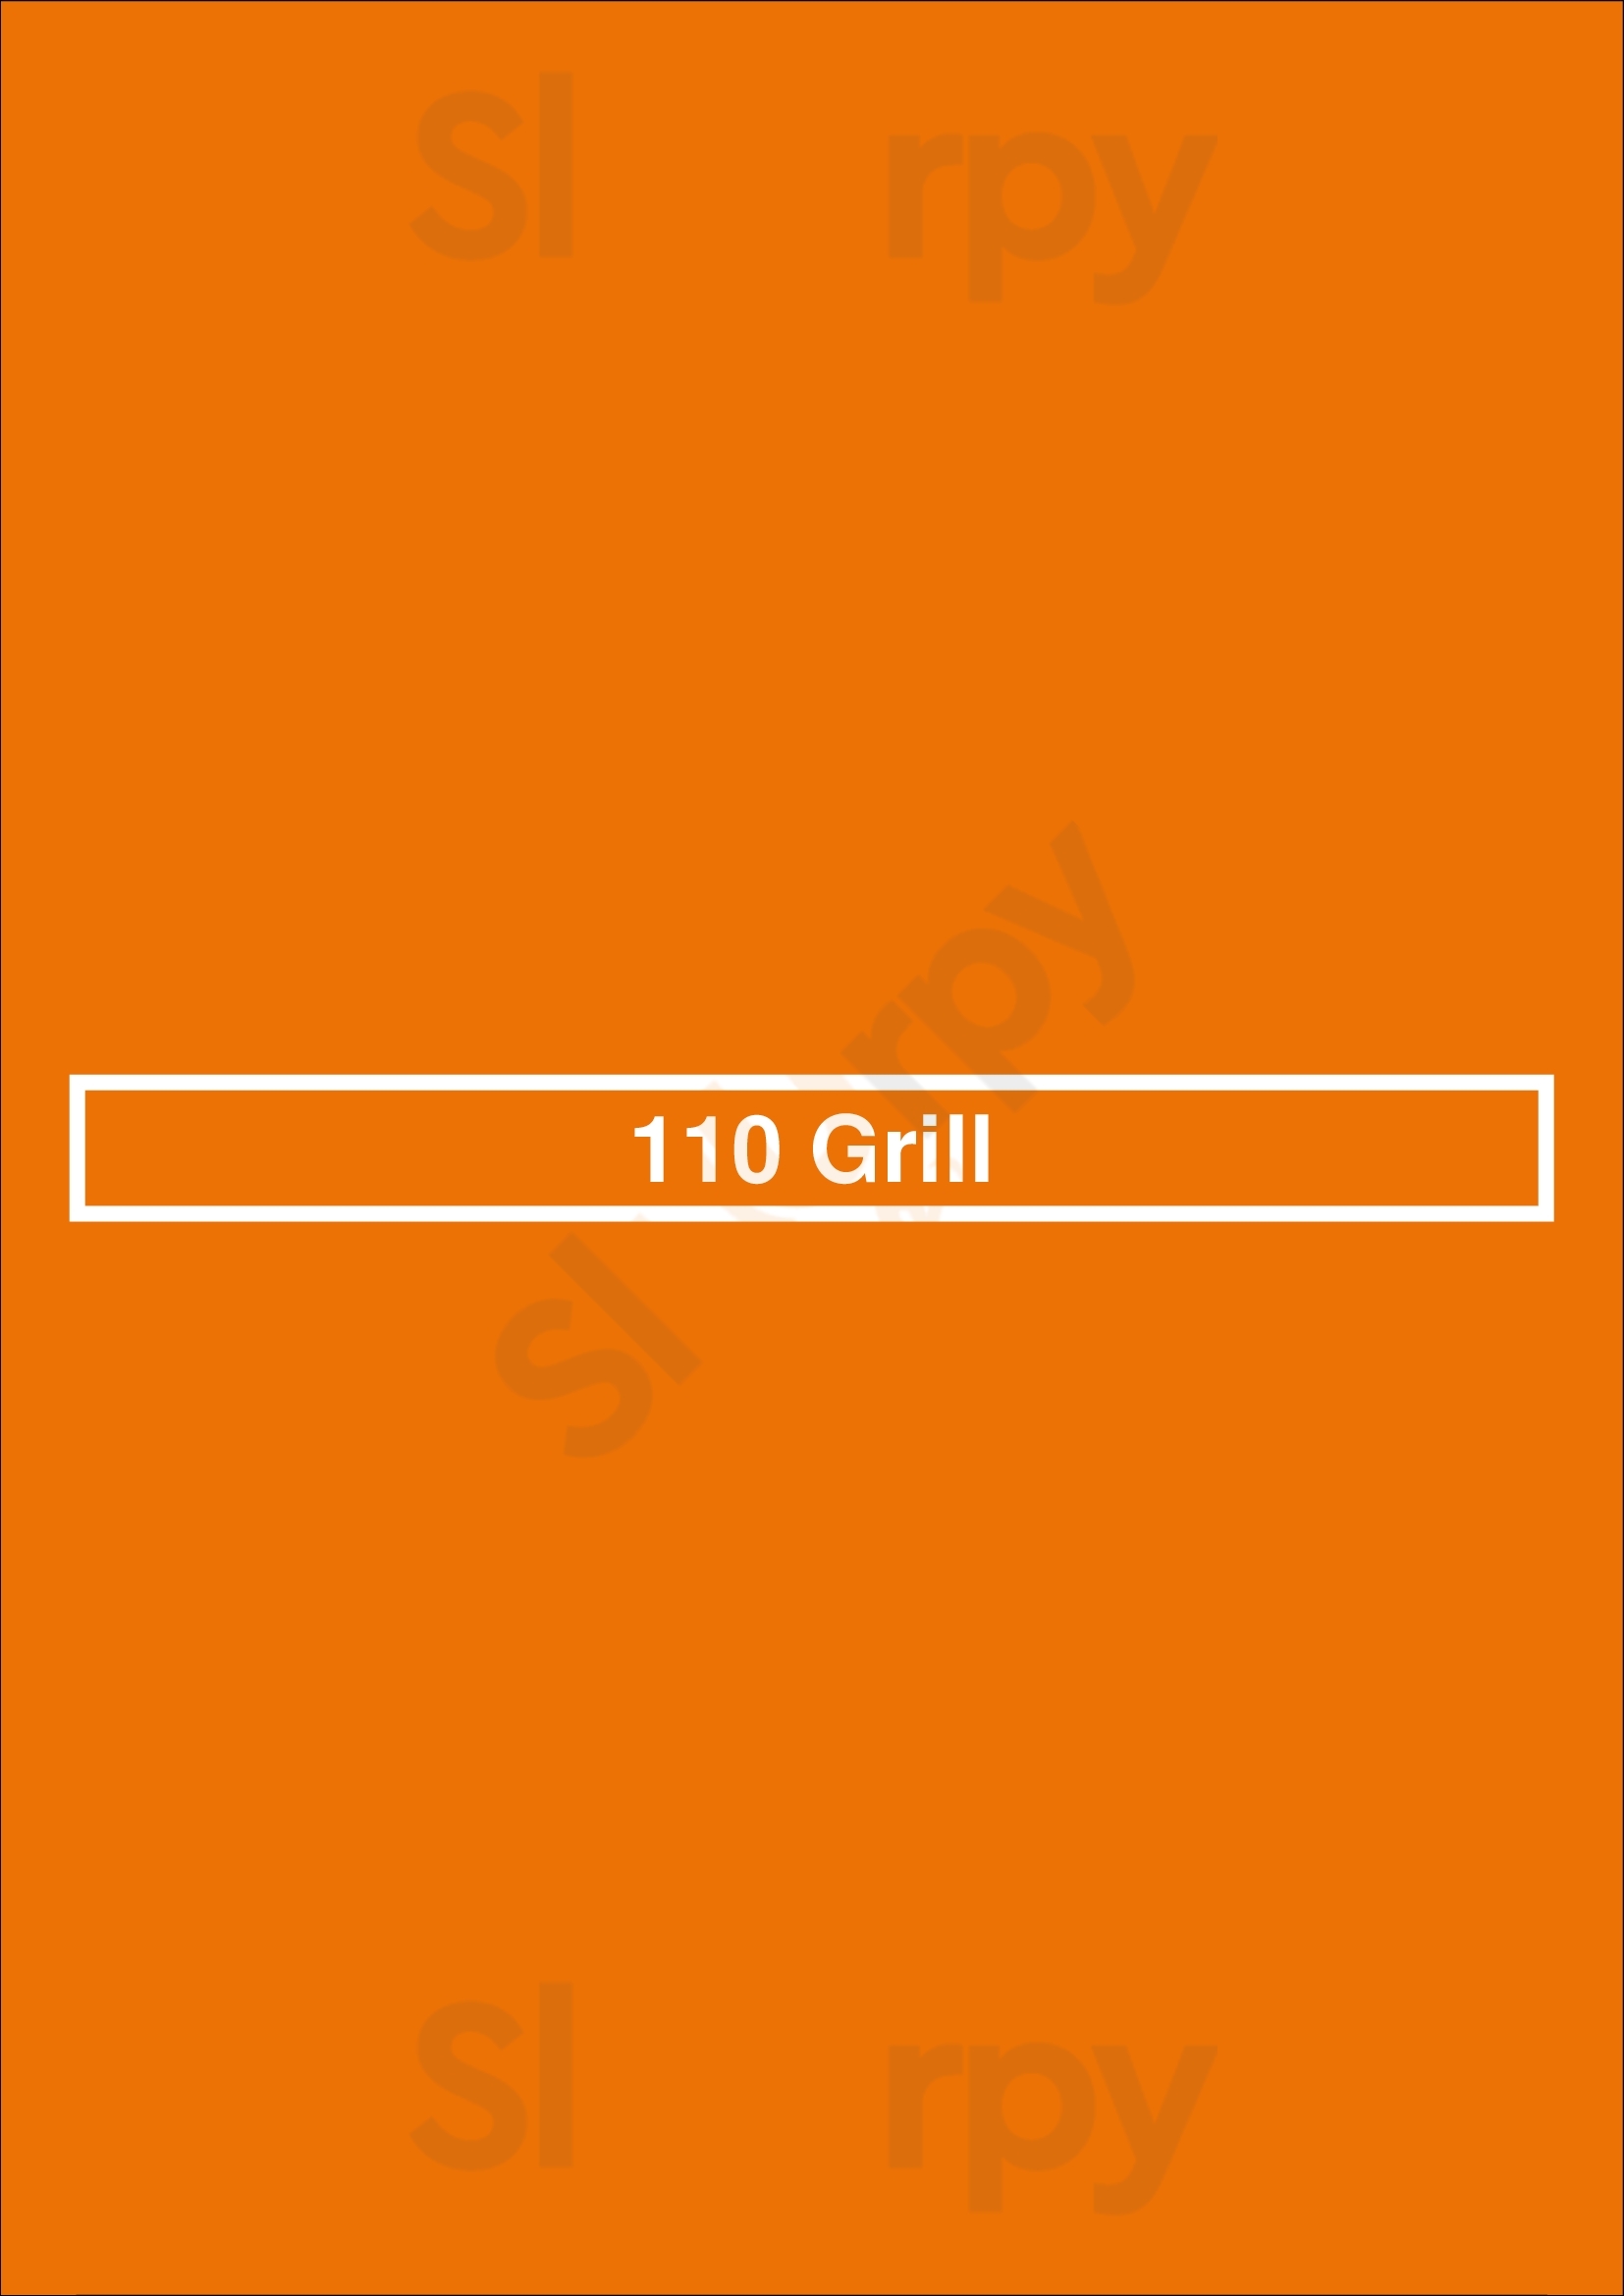 110 Grill South Bay Boston Menu - 1